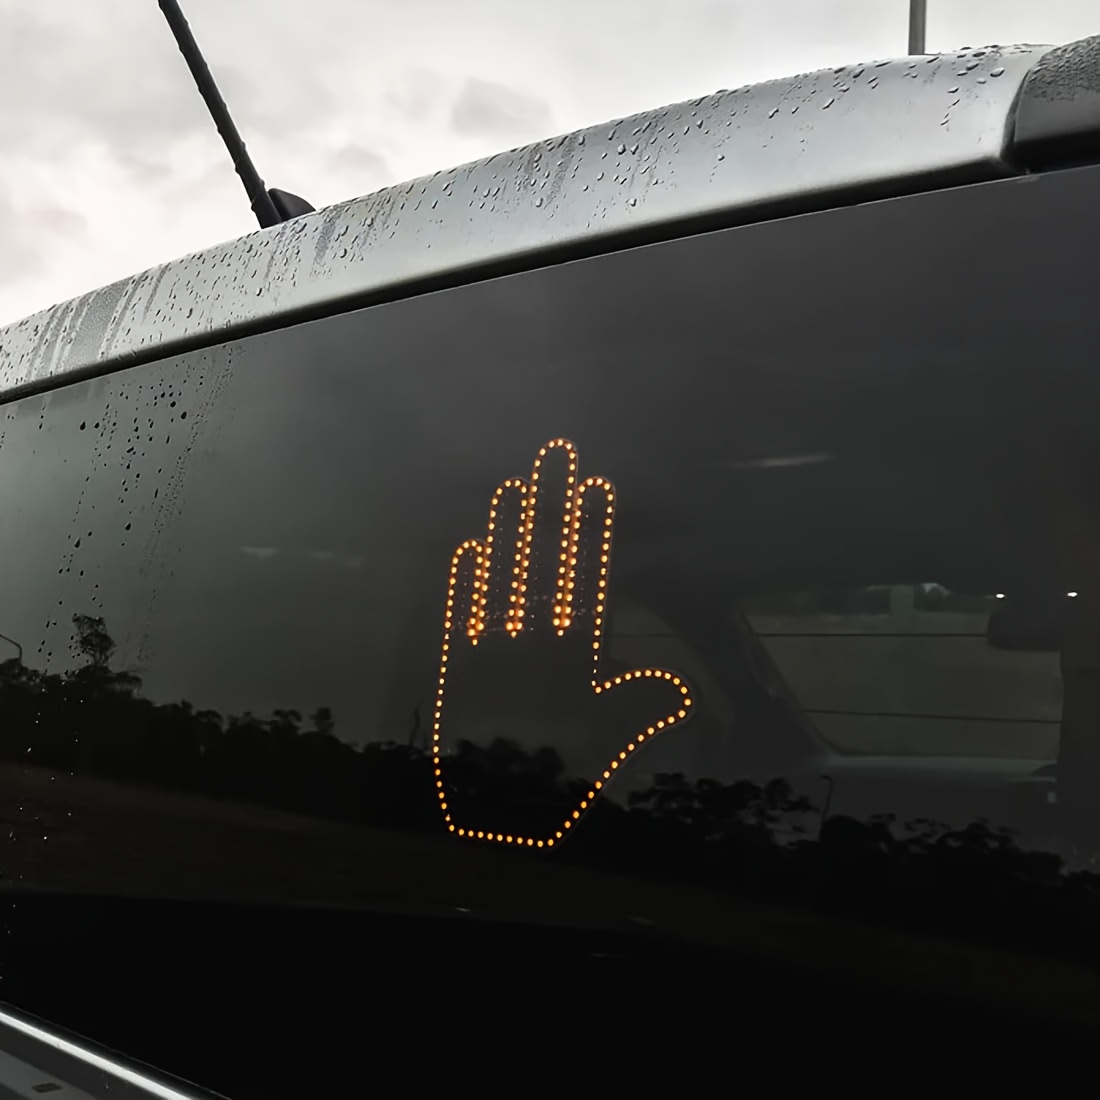  Luz de gesto de mano para automóvil con control remoto, nueva  divertida luz de automóvil 2024, luz LED para señal de dedo para automóvil,  camión, accesorios de camión, letreros de furia